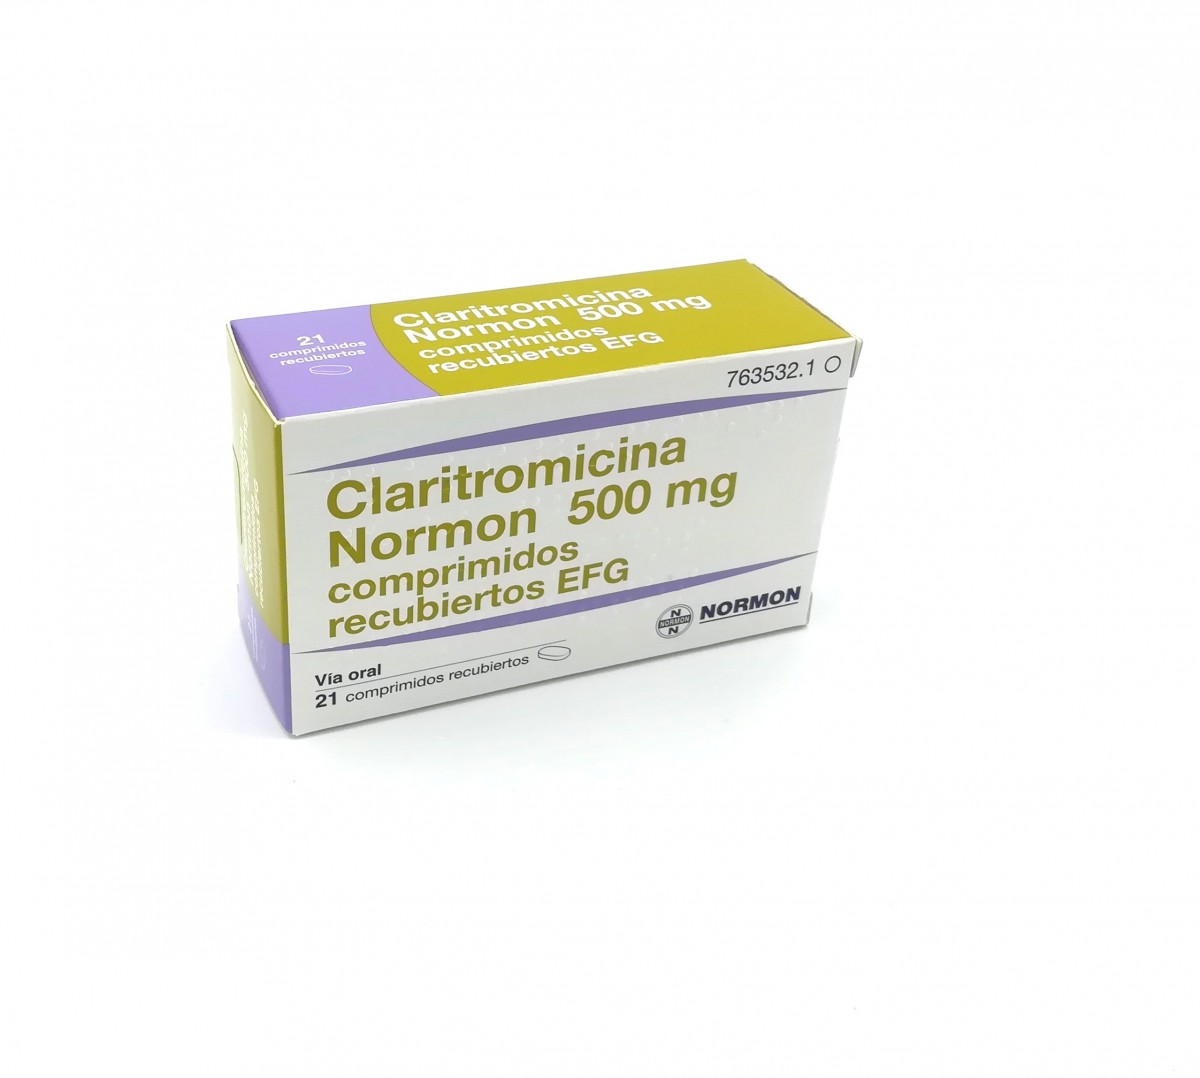 CLARITROMICINA NORMON 500 mg COMPRIMIDOS RECUBIERTOS EFG, 21 comprimidos fotografía del envase.